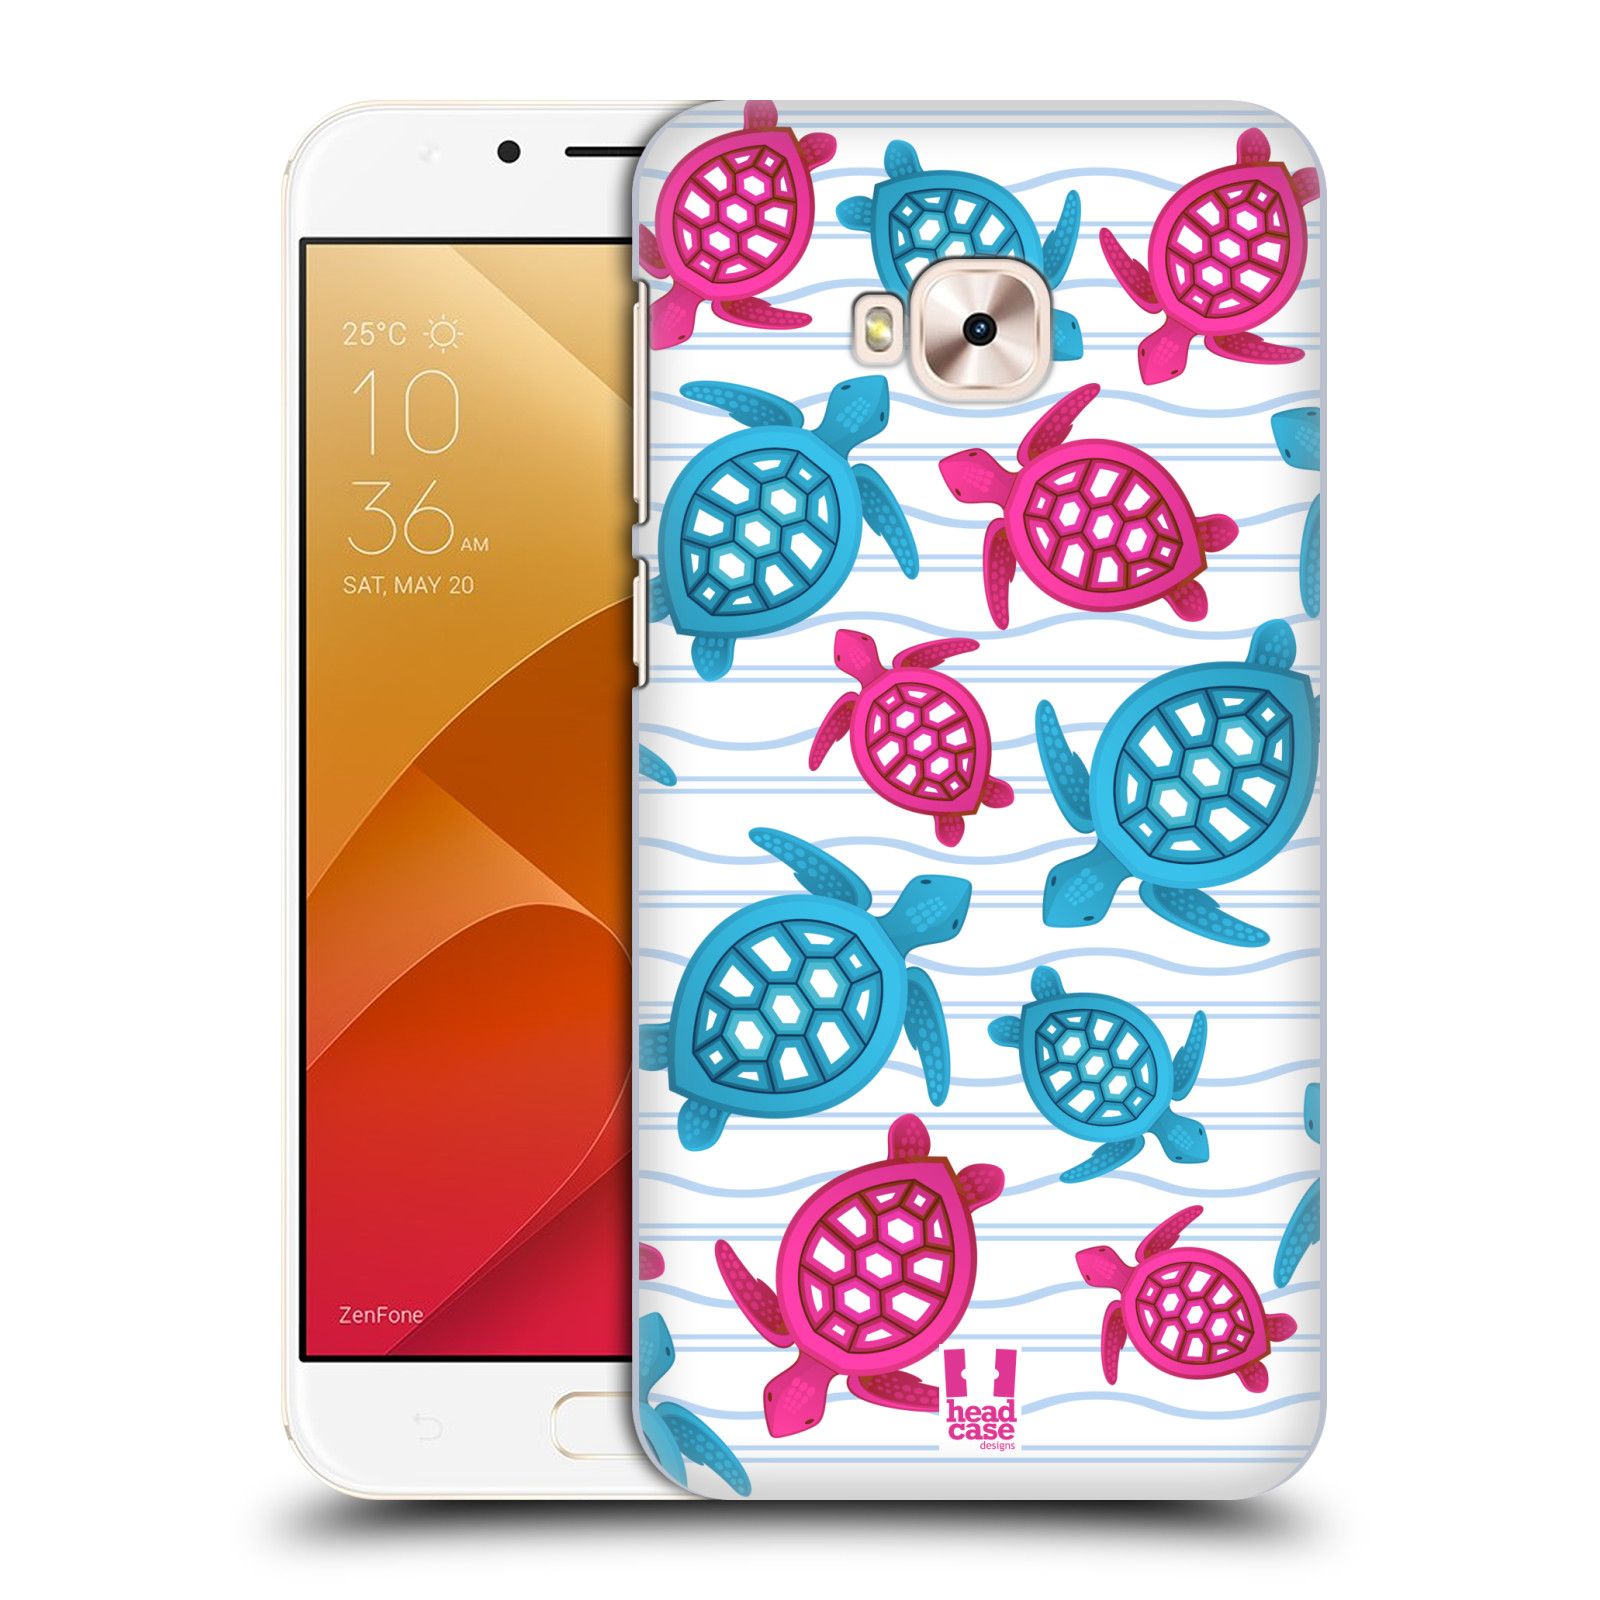 Zadní obal pro mobil Asus Zenfone 4 Selfie Pro ZD552KL - HEAD CASE - kreslený mořský vzor želvičky